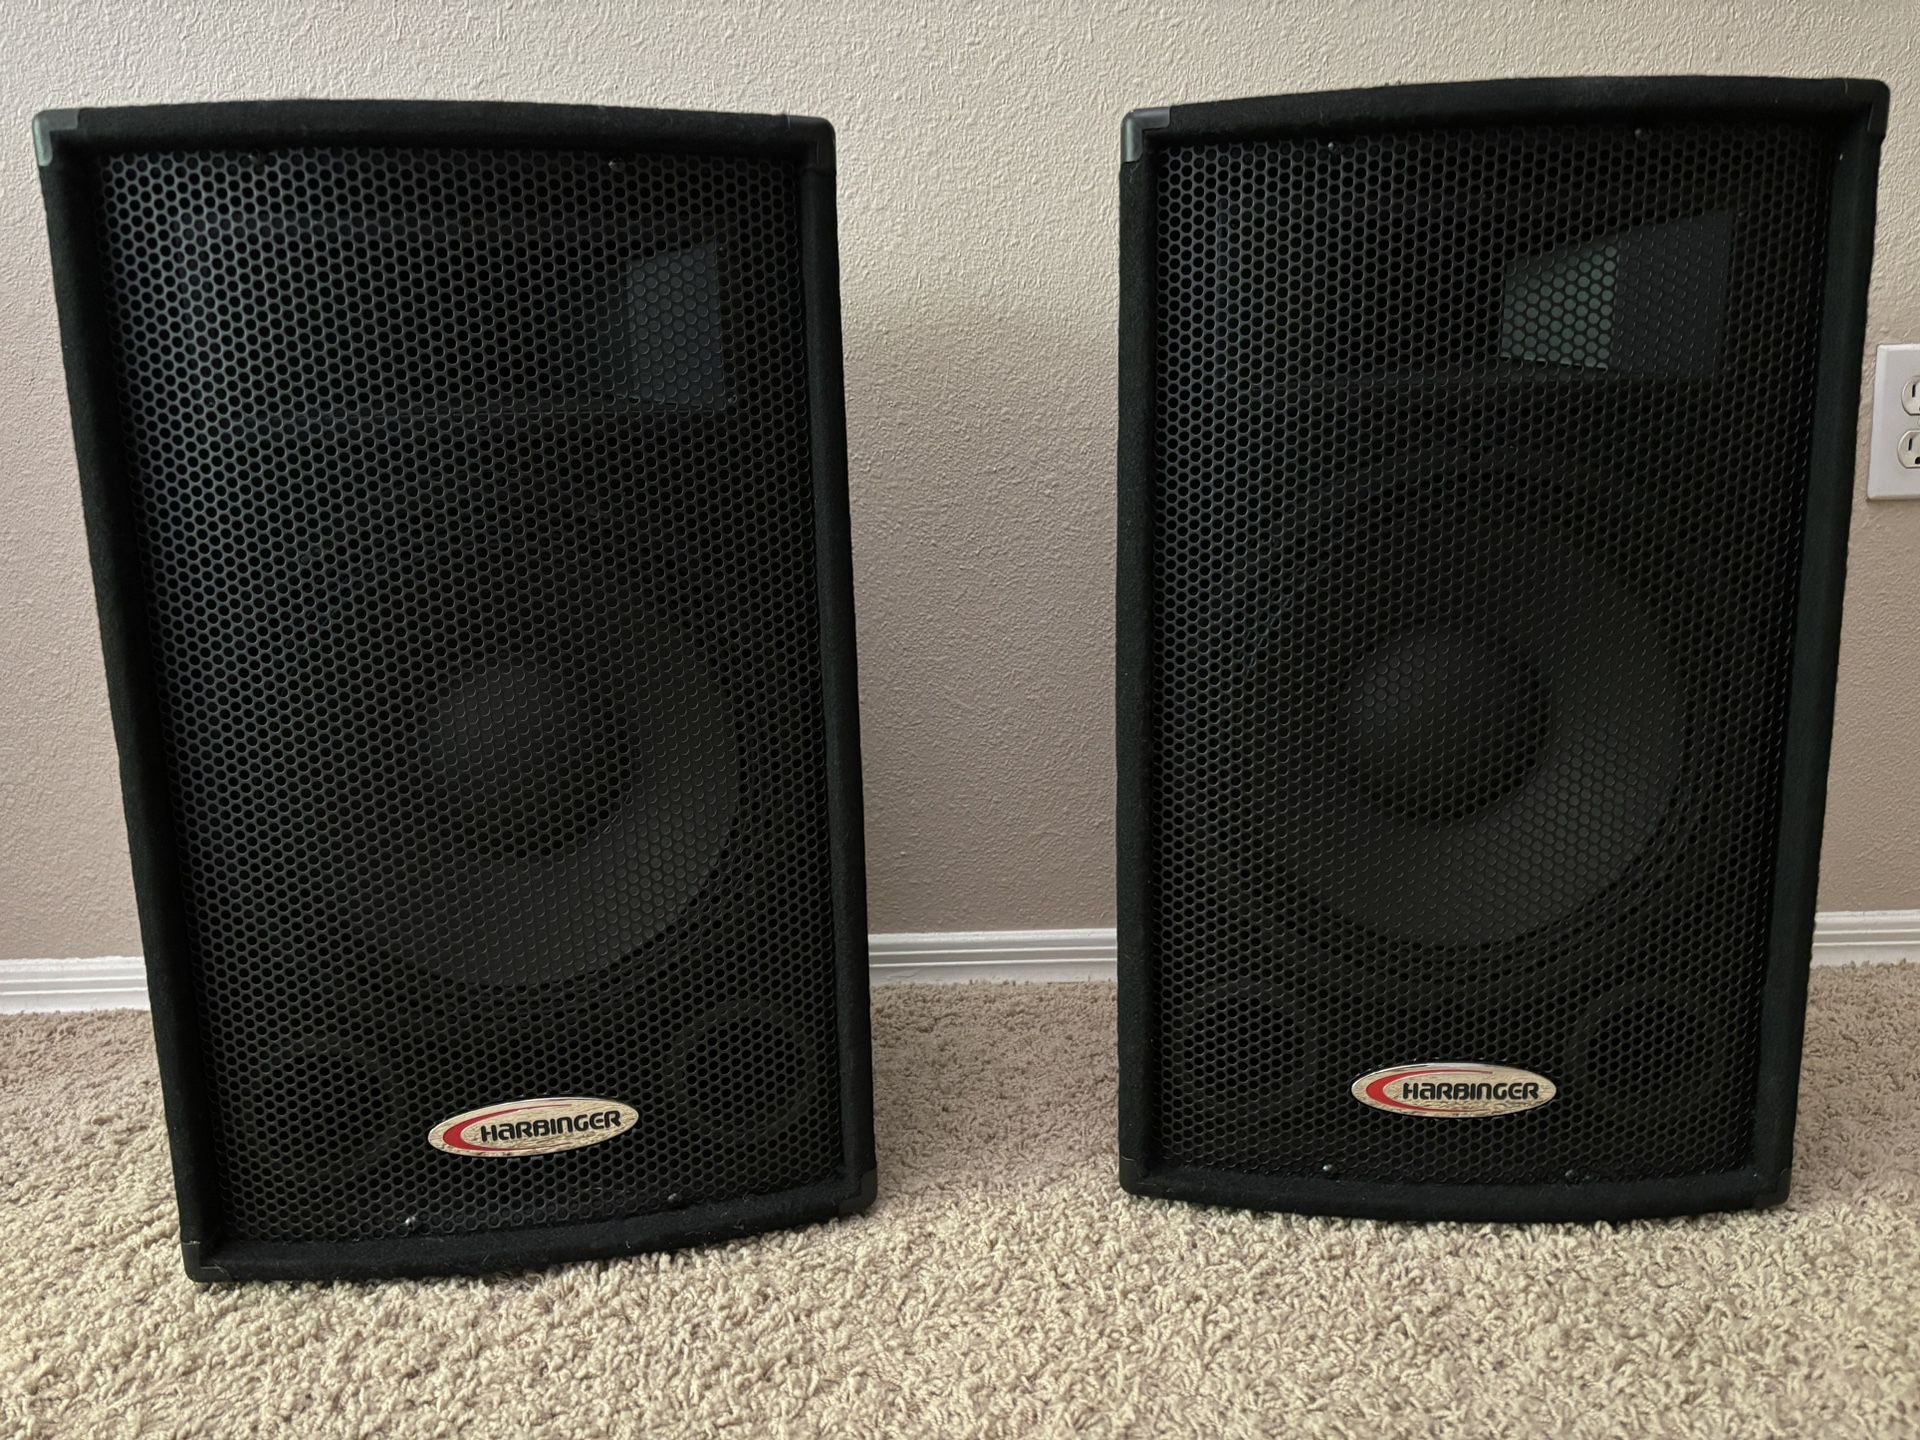 Harbinger HA 120 speakers